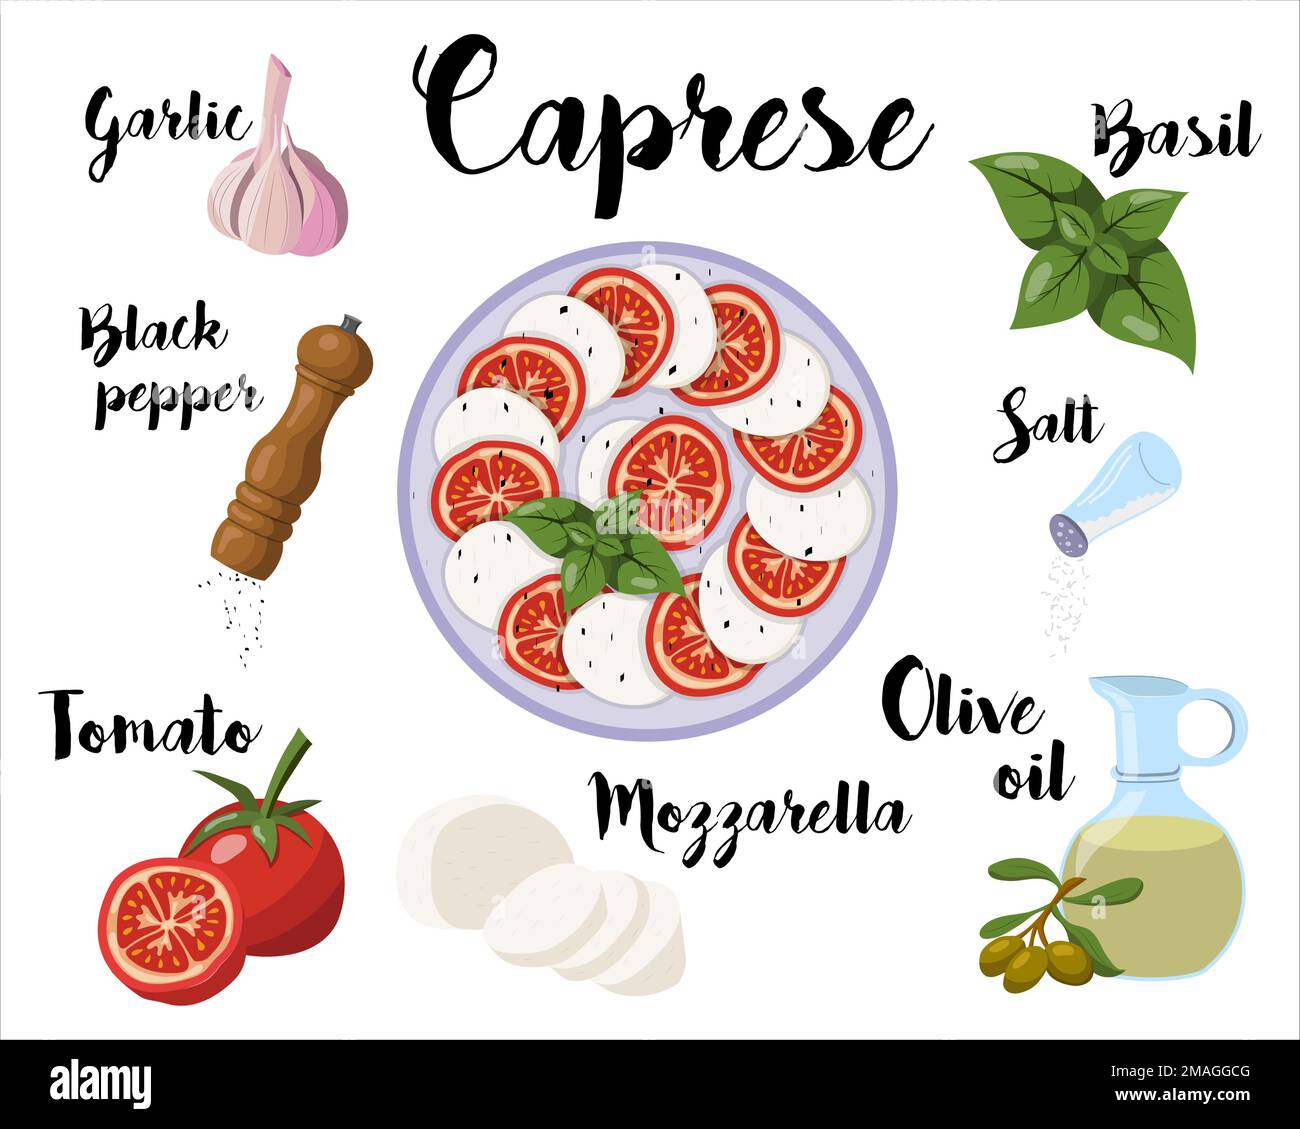 affiche de cuisine avec recette de salade caprese. Illustration vectorielle sur fond blanc Illustration de Vecteur